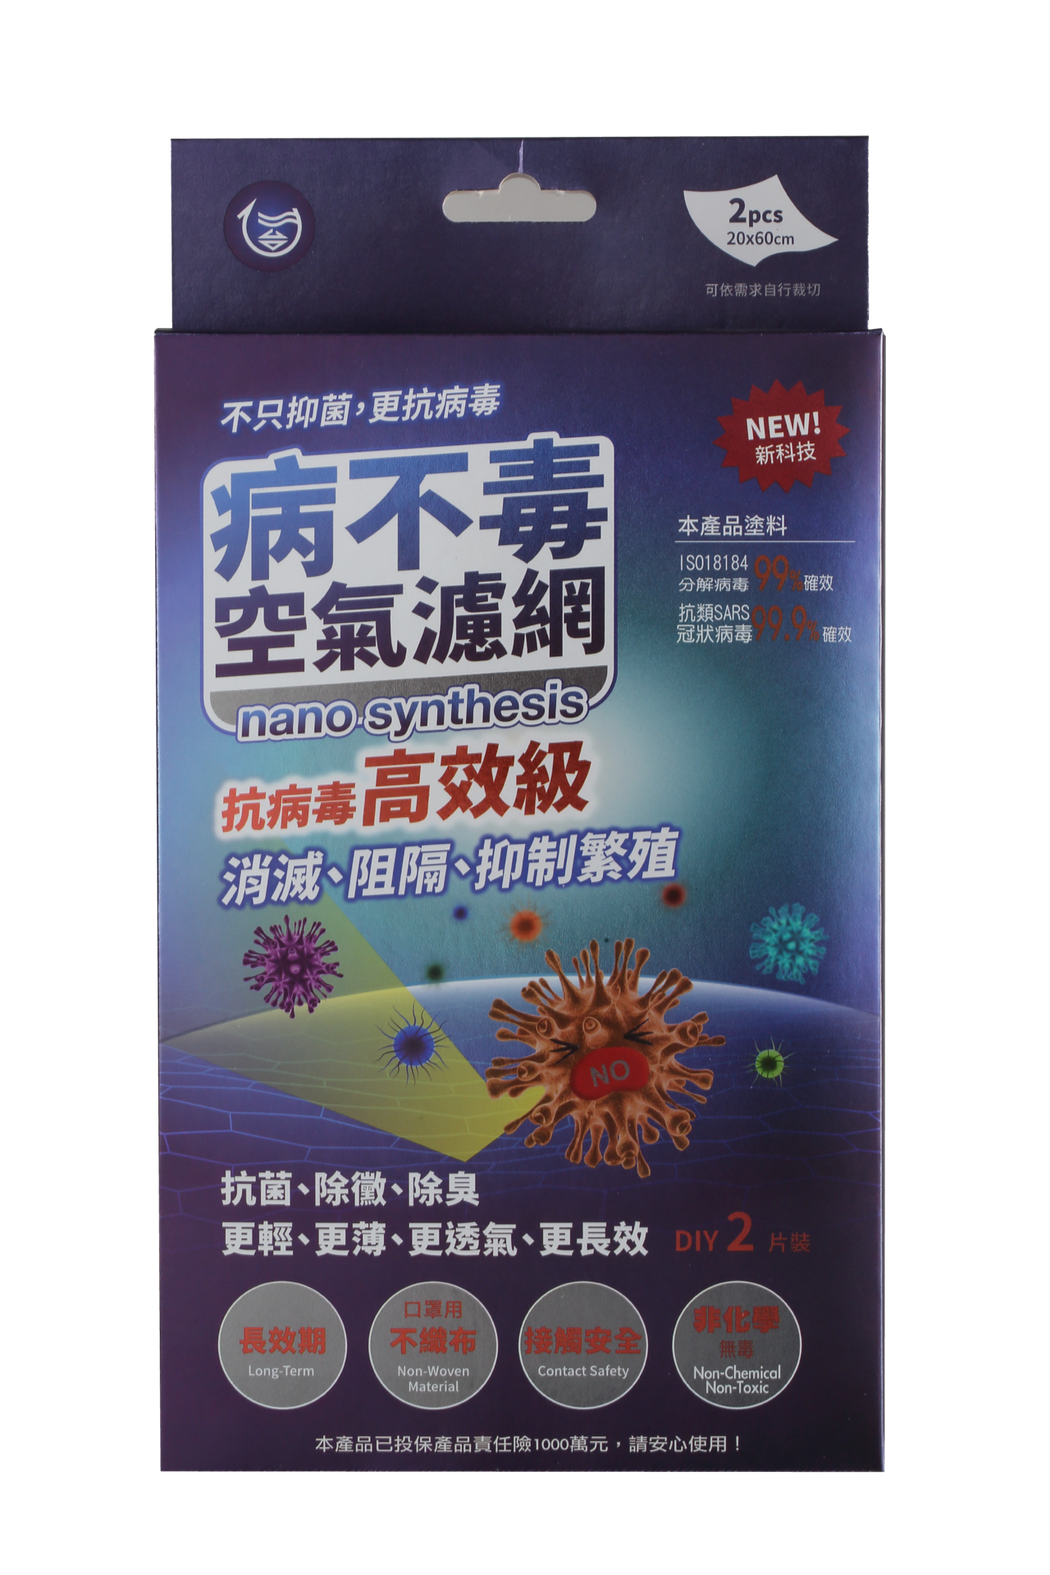 「病不毒空氣濾網」是台灣的專利產品，它的抗菌效果經過美、中、台SGS驗証最高可達...